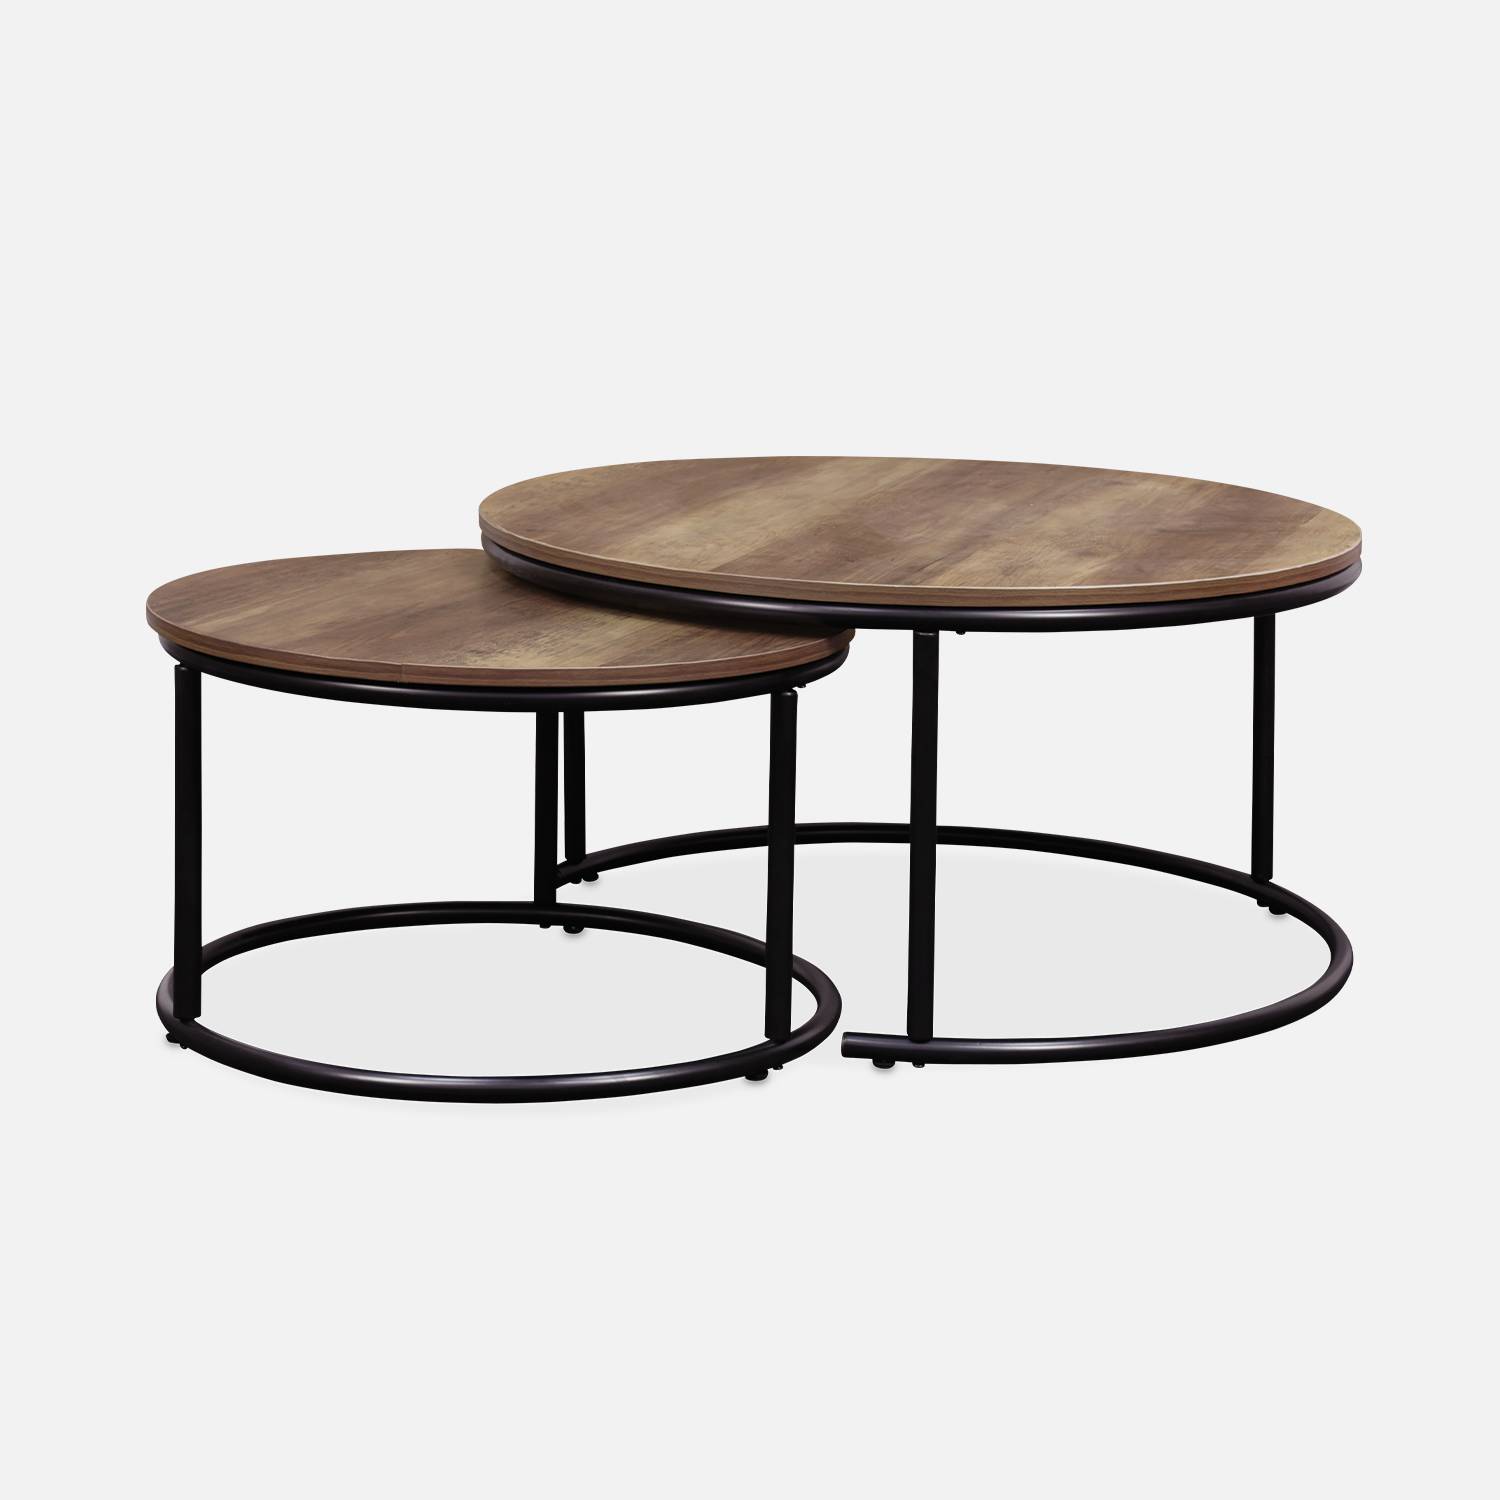 Set 2 ronde inschuifbare lage tafels van zwart metaal en een blad met houtlook, 1x Ø77xh40cm / x1 Ø57xh35cm Photo4